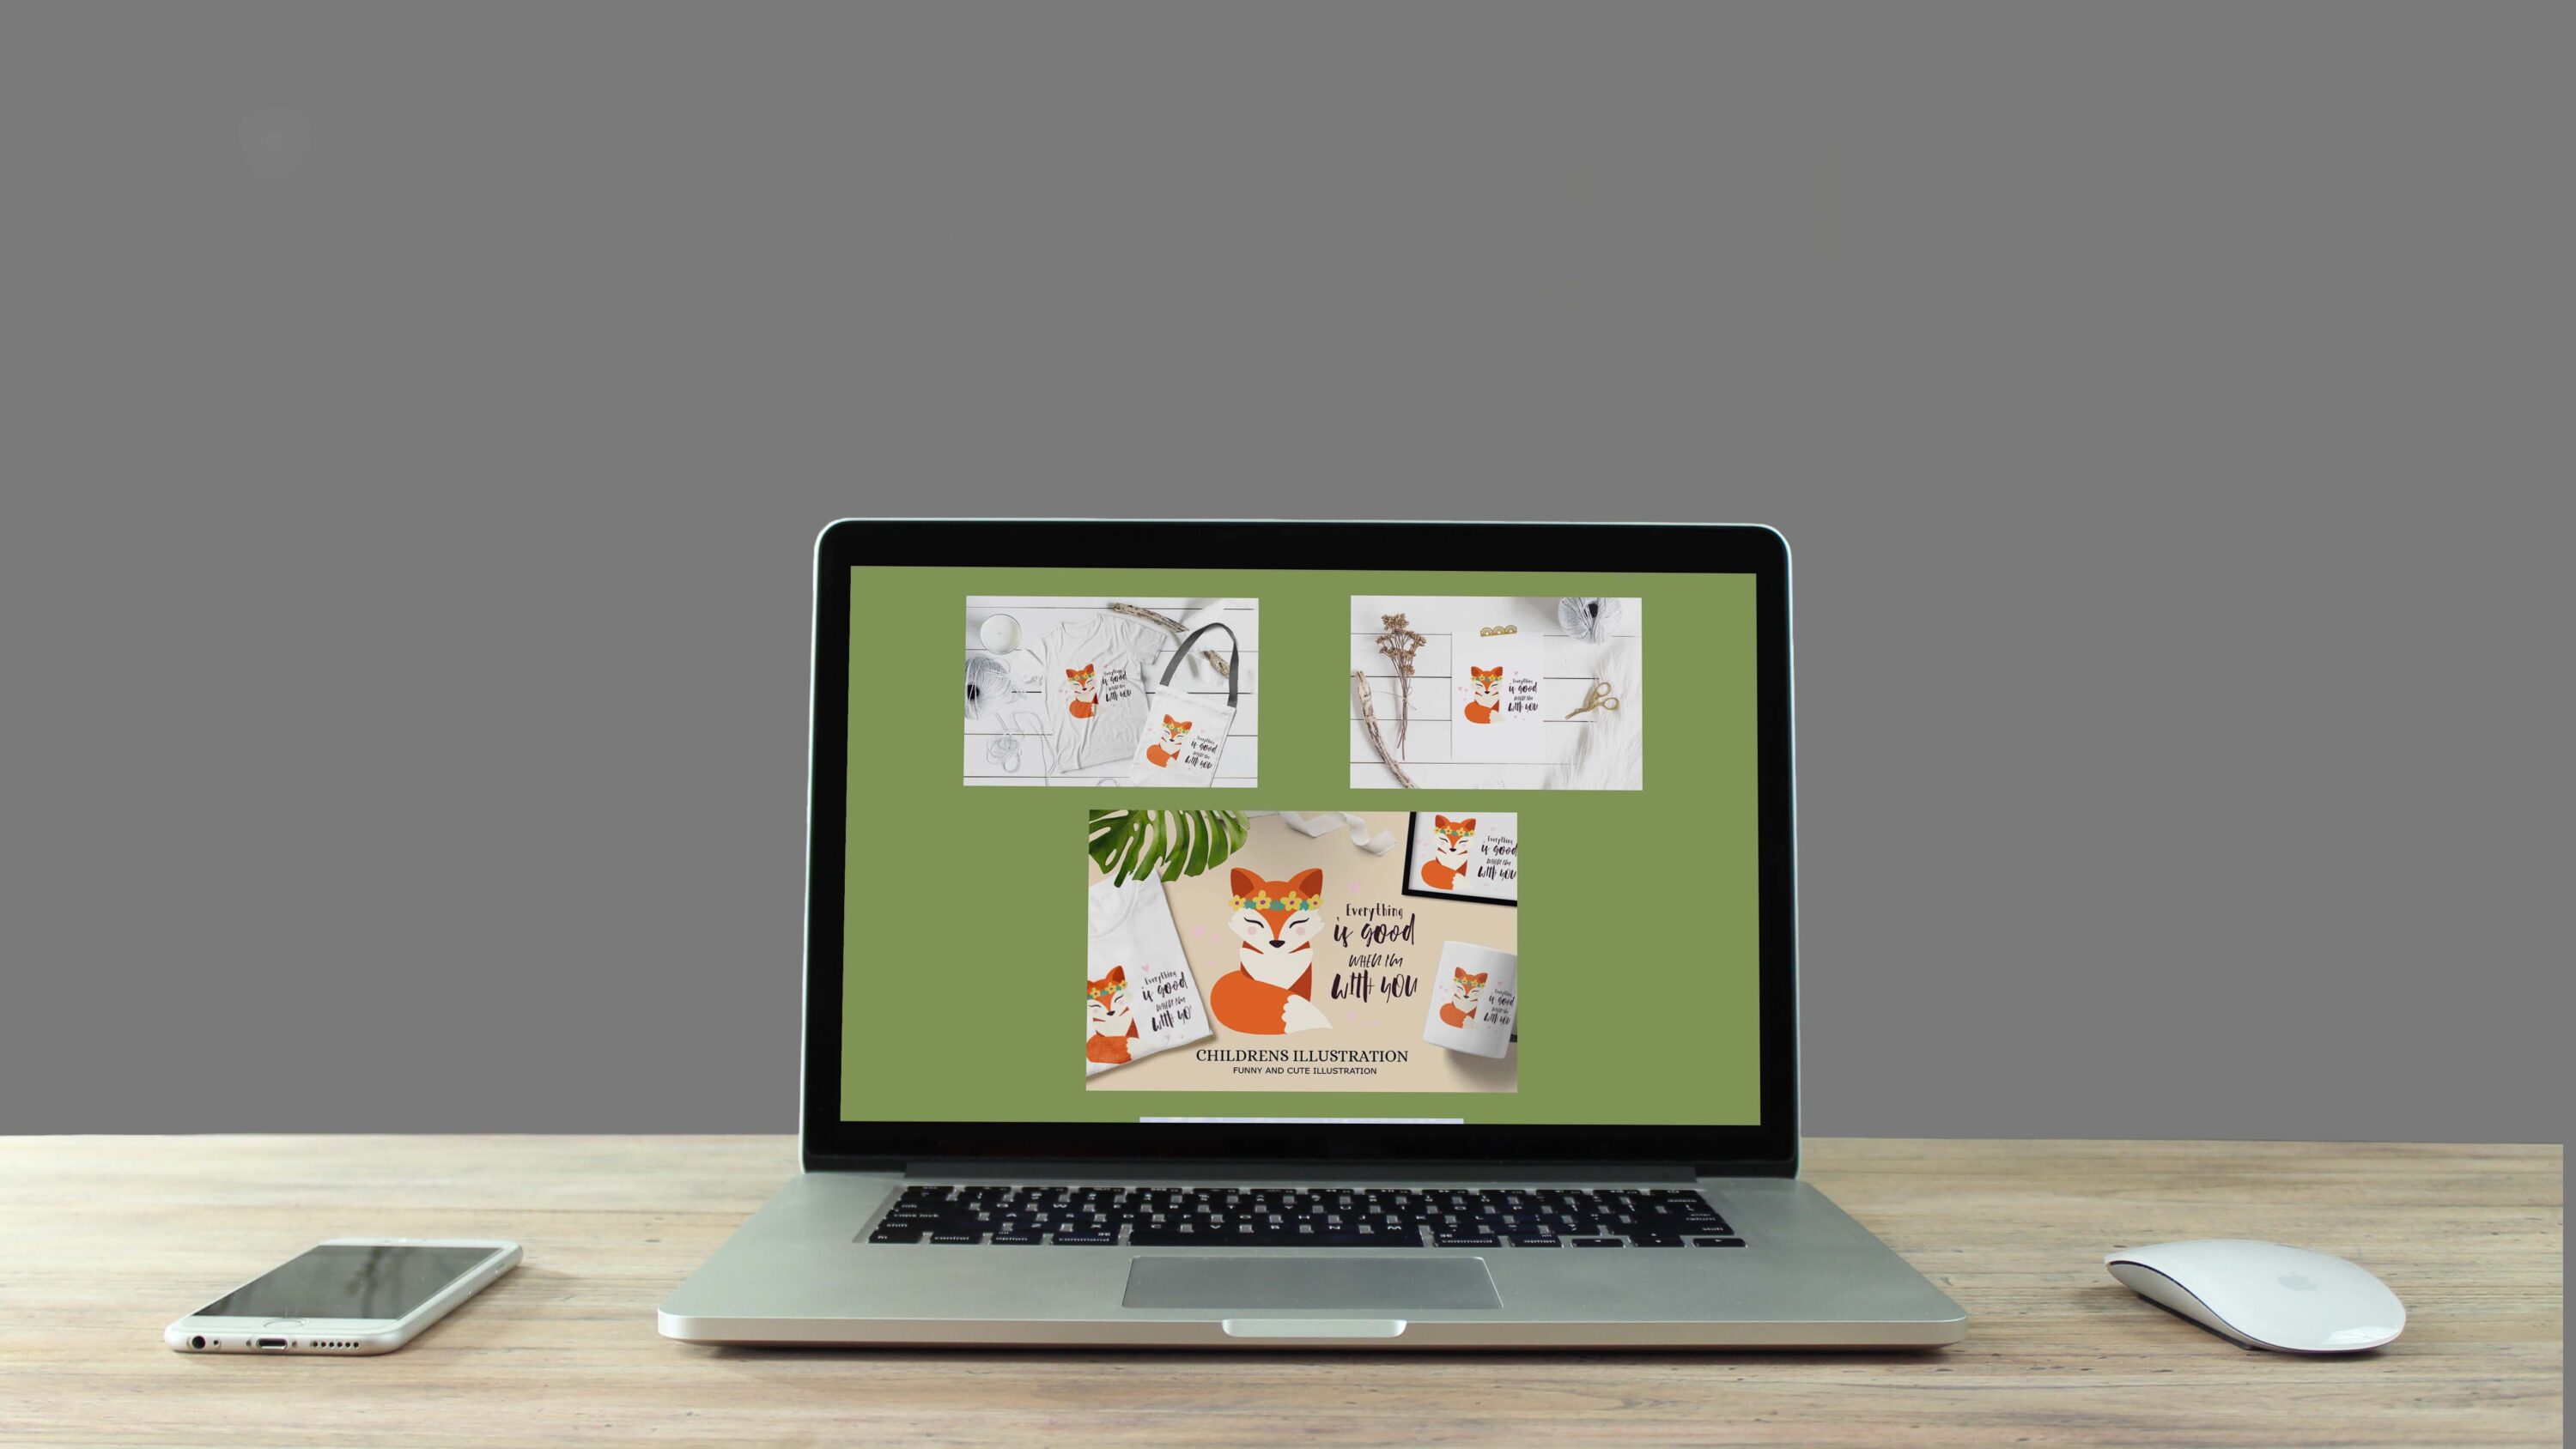 Fox illustration / SVG illustration - laptop.